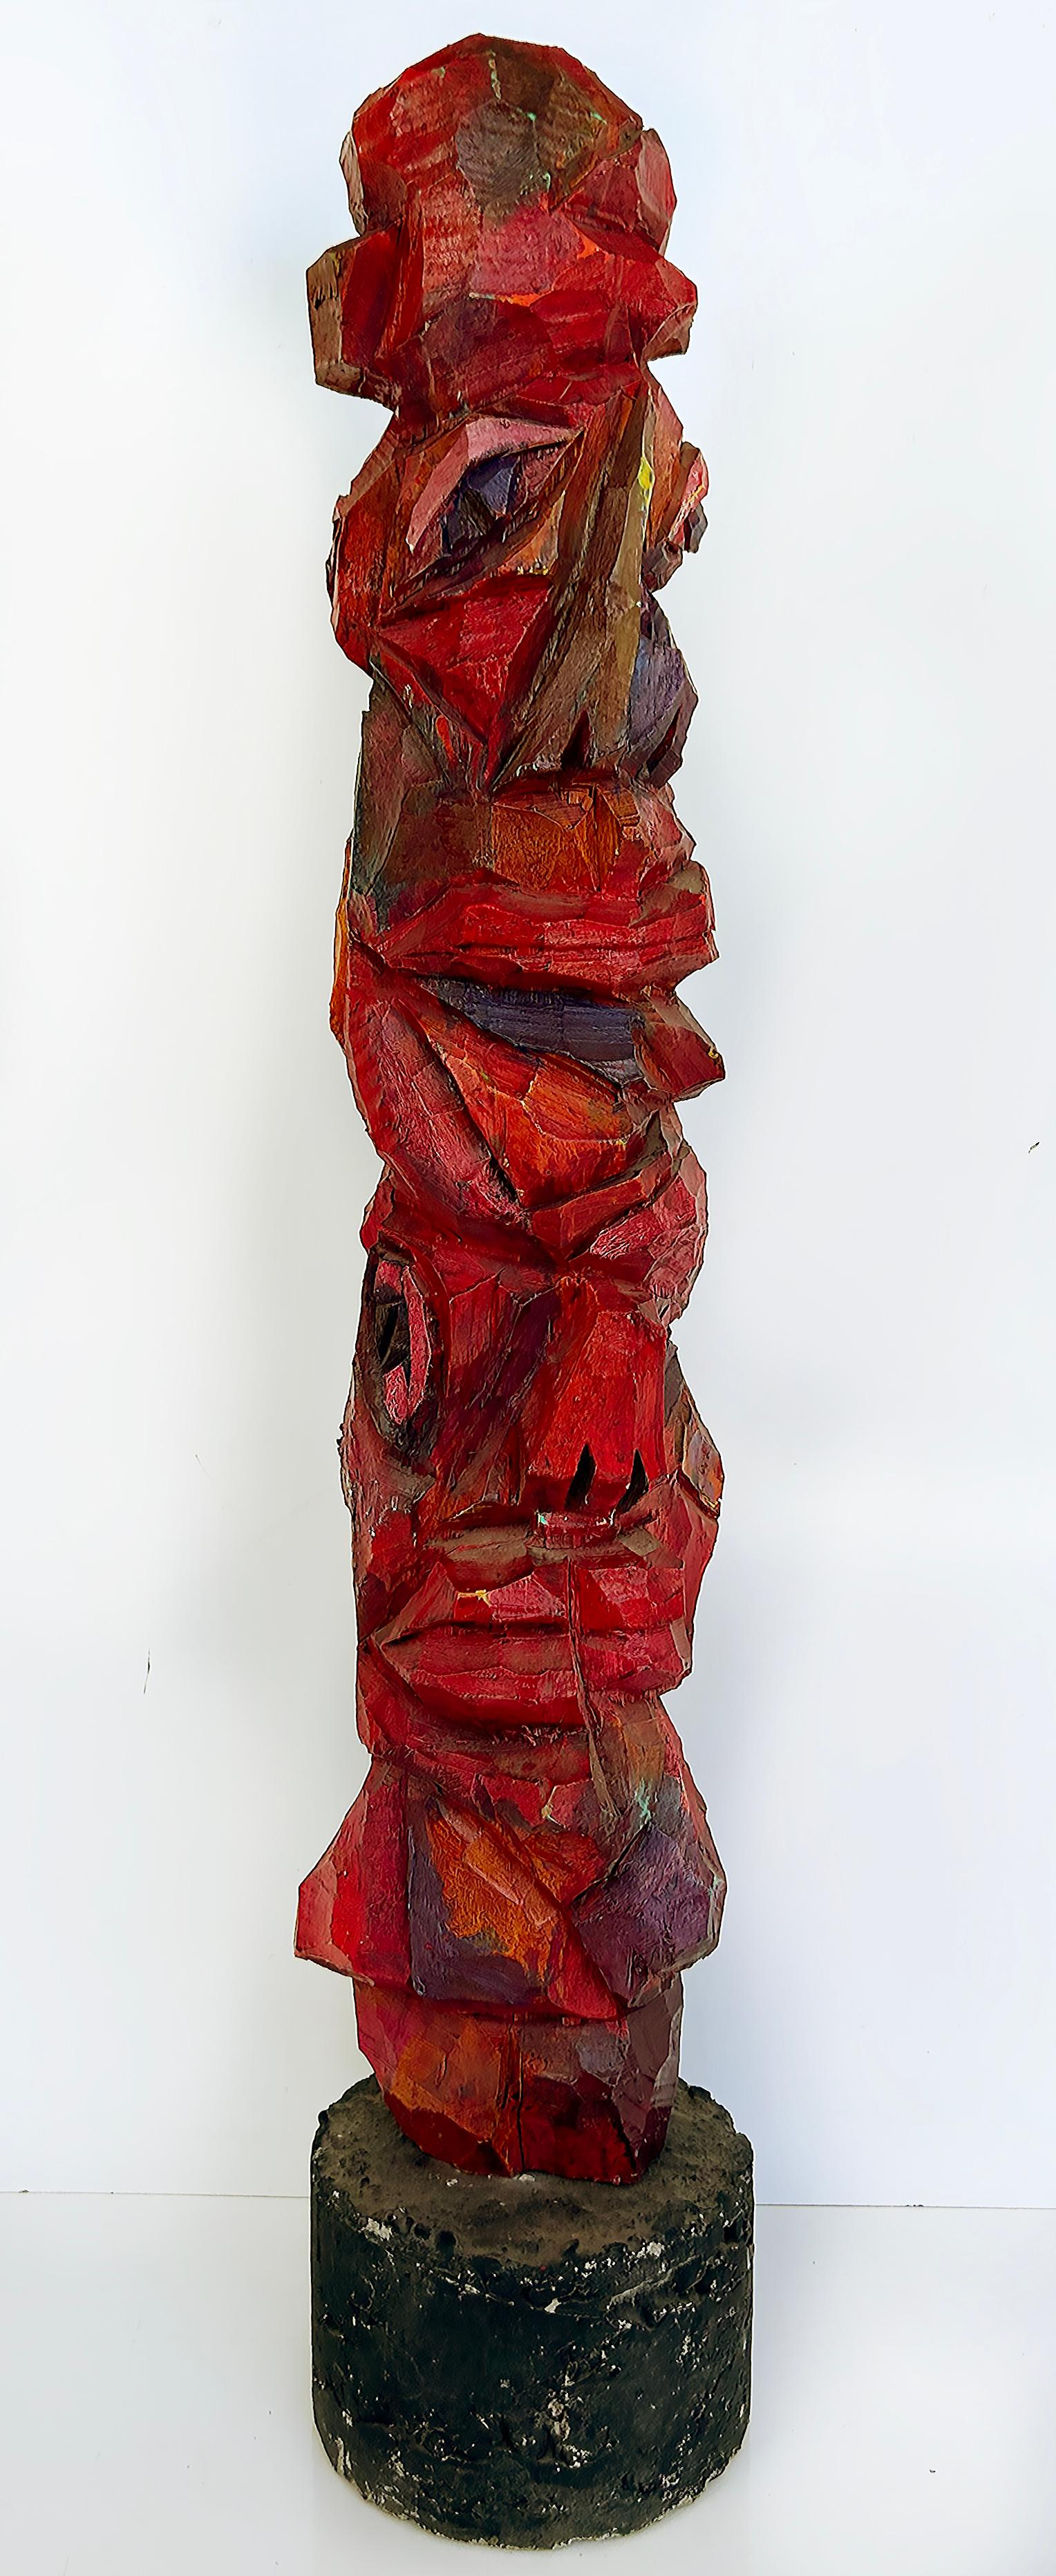 Primitives geschnitztes Totem-Volkskunst-Skulptur von Tom Cramer, polychromiert

Zum Verkauf angeboten wird eine Tom Cramer primitive geschnitzt amerikanische Volkskunst handgeschnitzt, bemalt und polychromed figurative Skulptur. Es handelt sich um